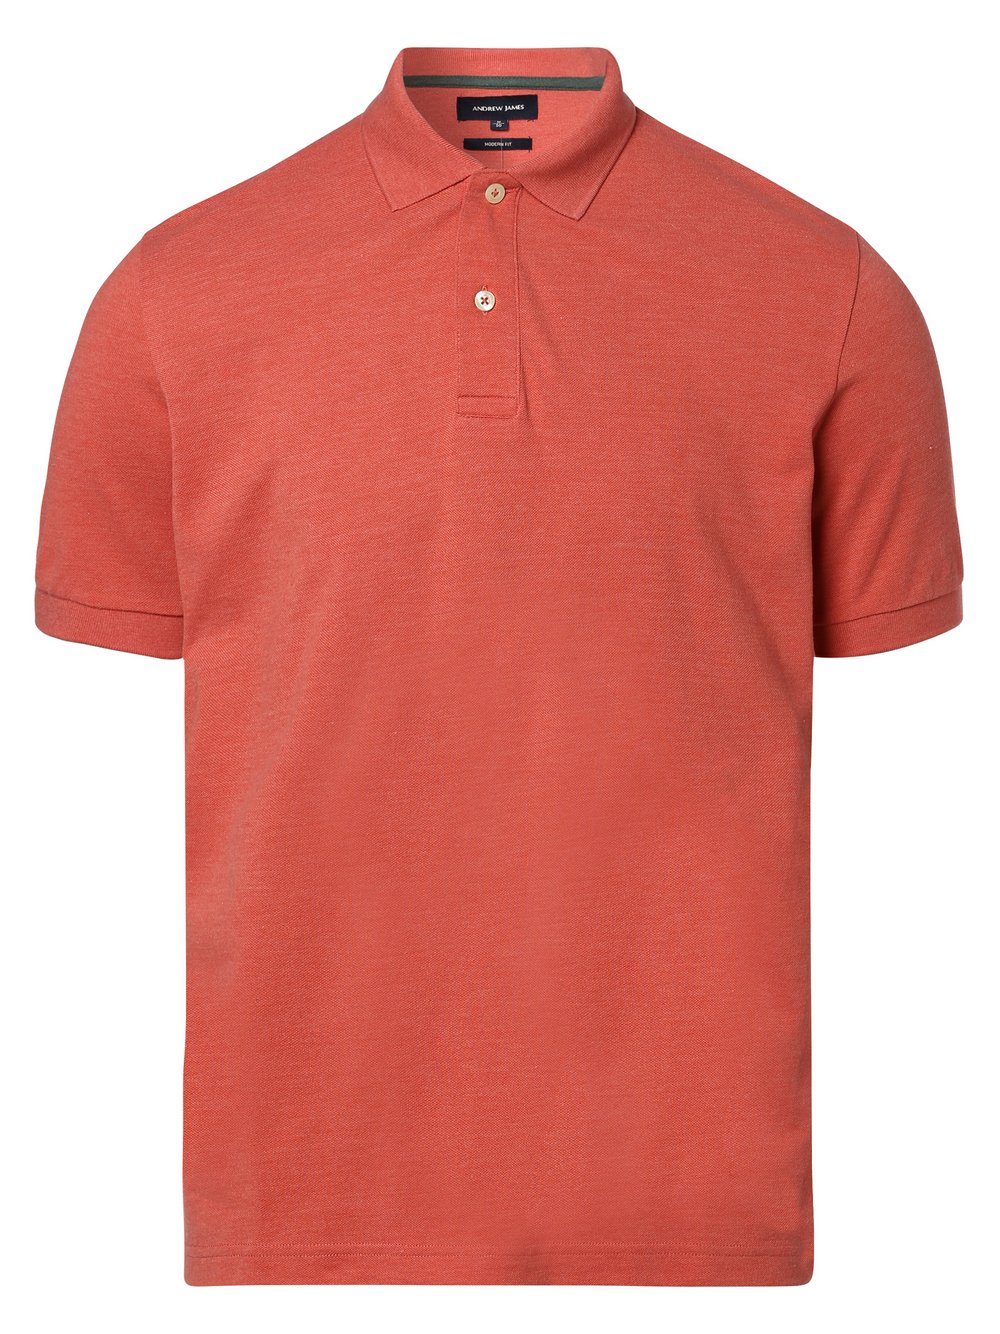 Andrew James - Męska koszulka polo, pomarańczowy|czerwony